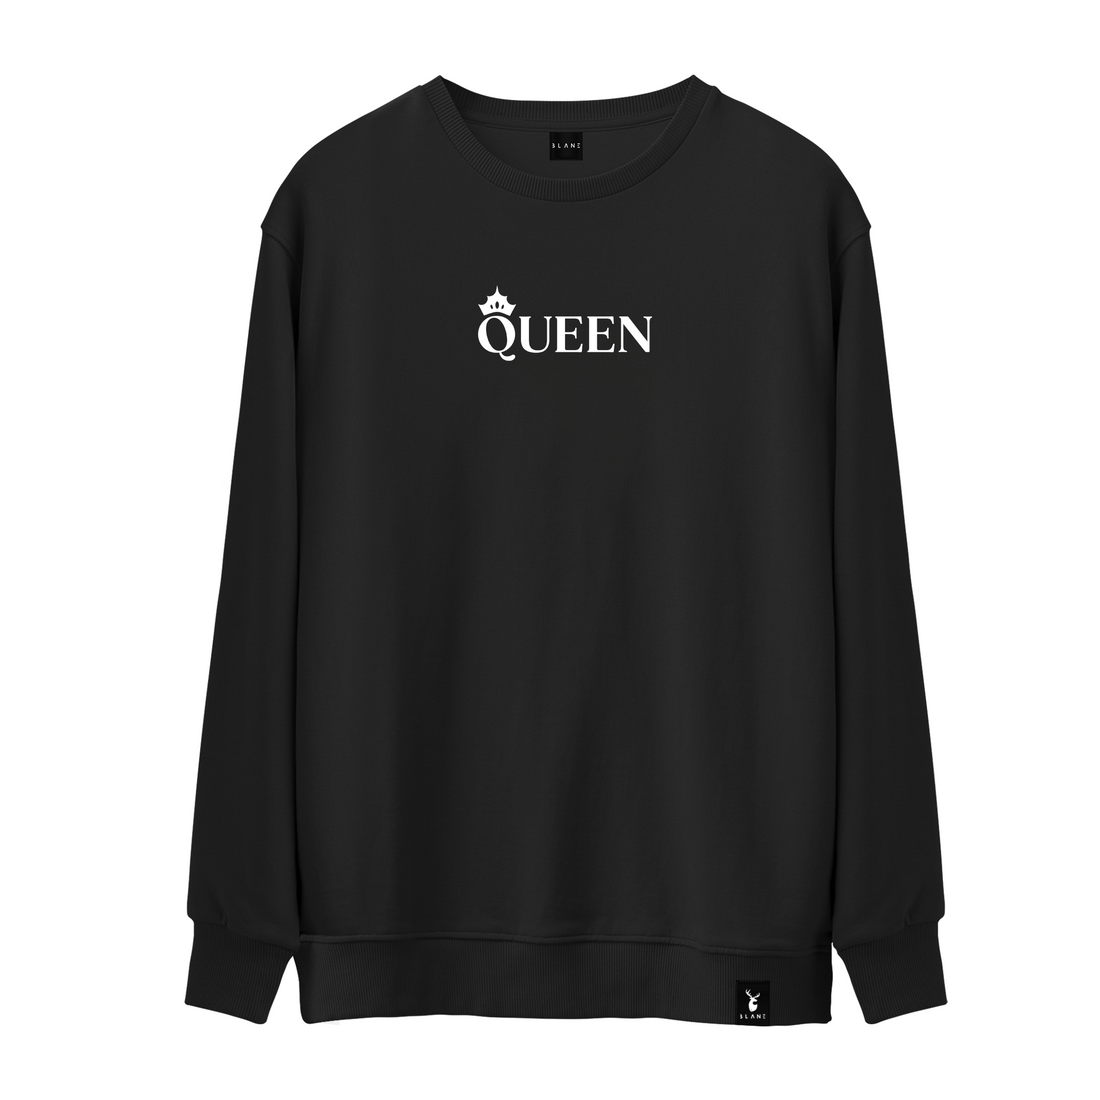 Queen - Sweatshirt